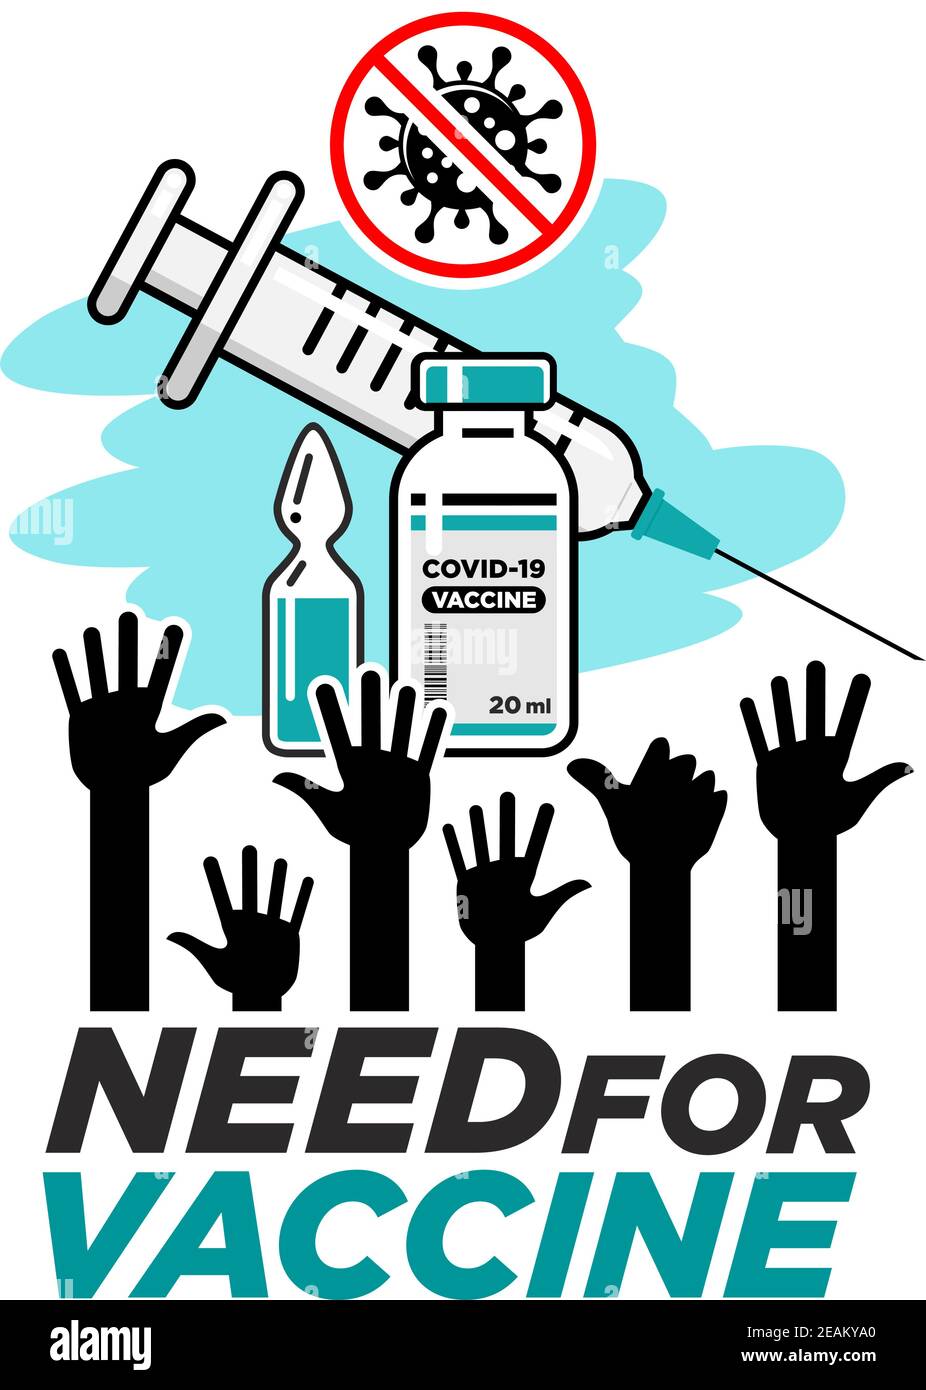 Besoin de vaccin. Mains levées de personnes demandant un vaccin contre le coronavirus. Poster vectoriel sur fond transparent Illustration de Vecteur